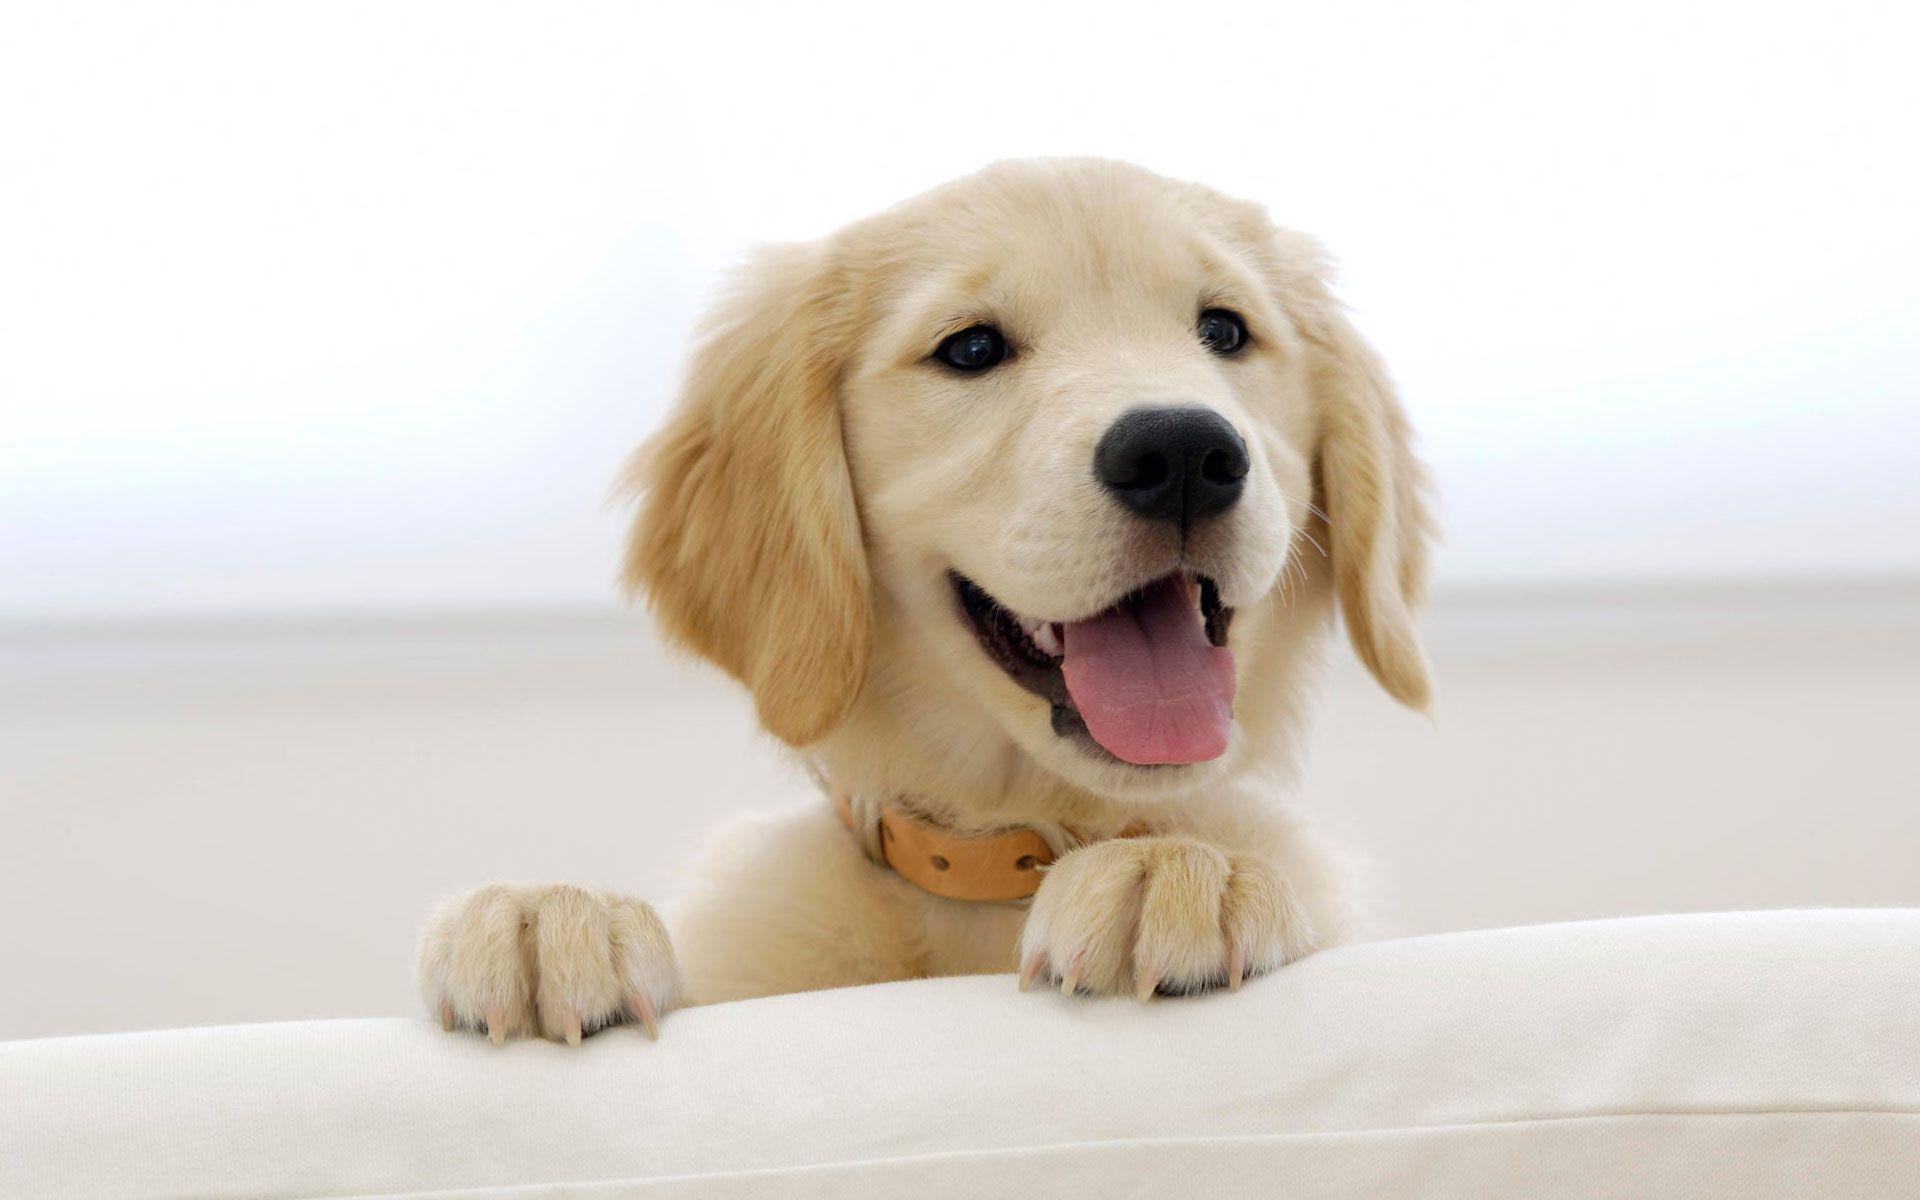 Cute puppy 4k wallpaper cute puppy 4k wallpaper For your desktop